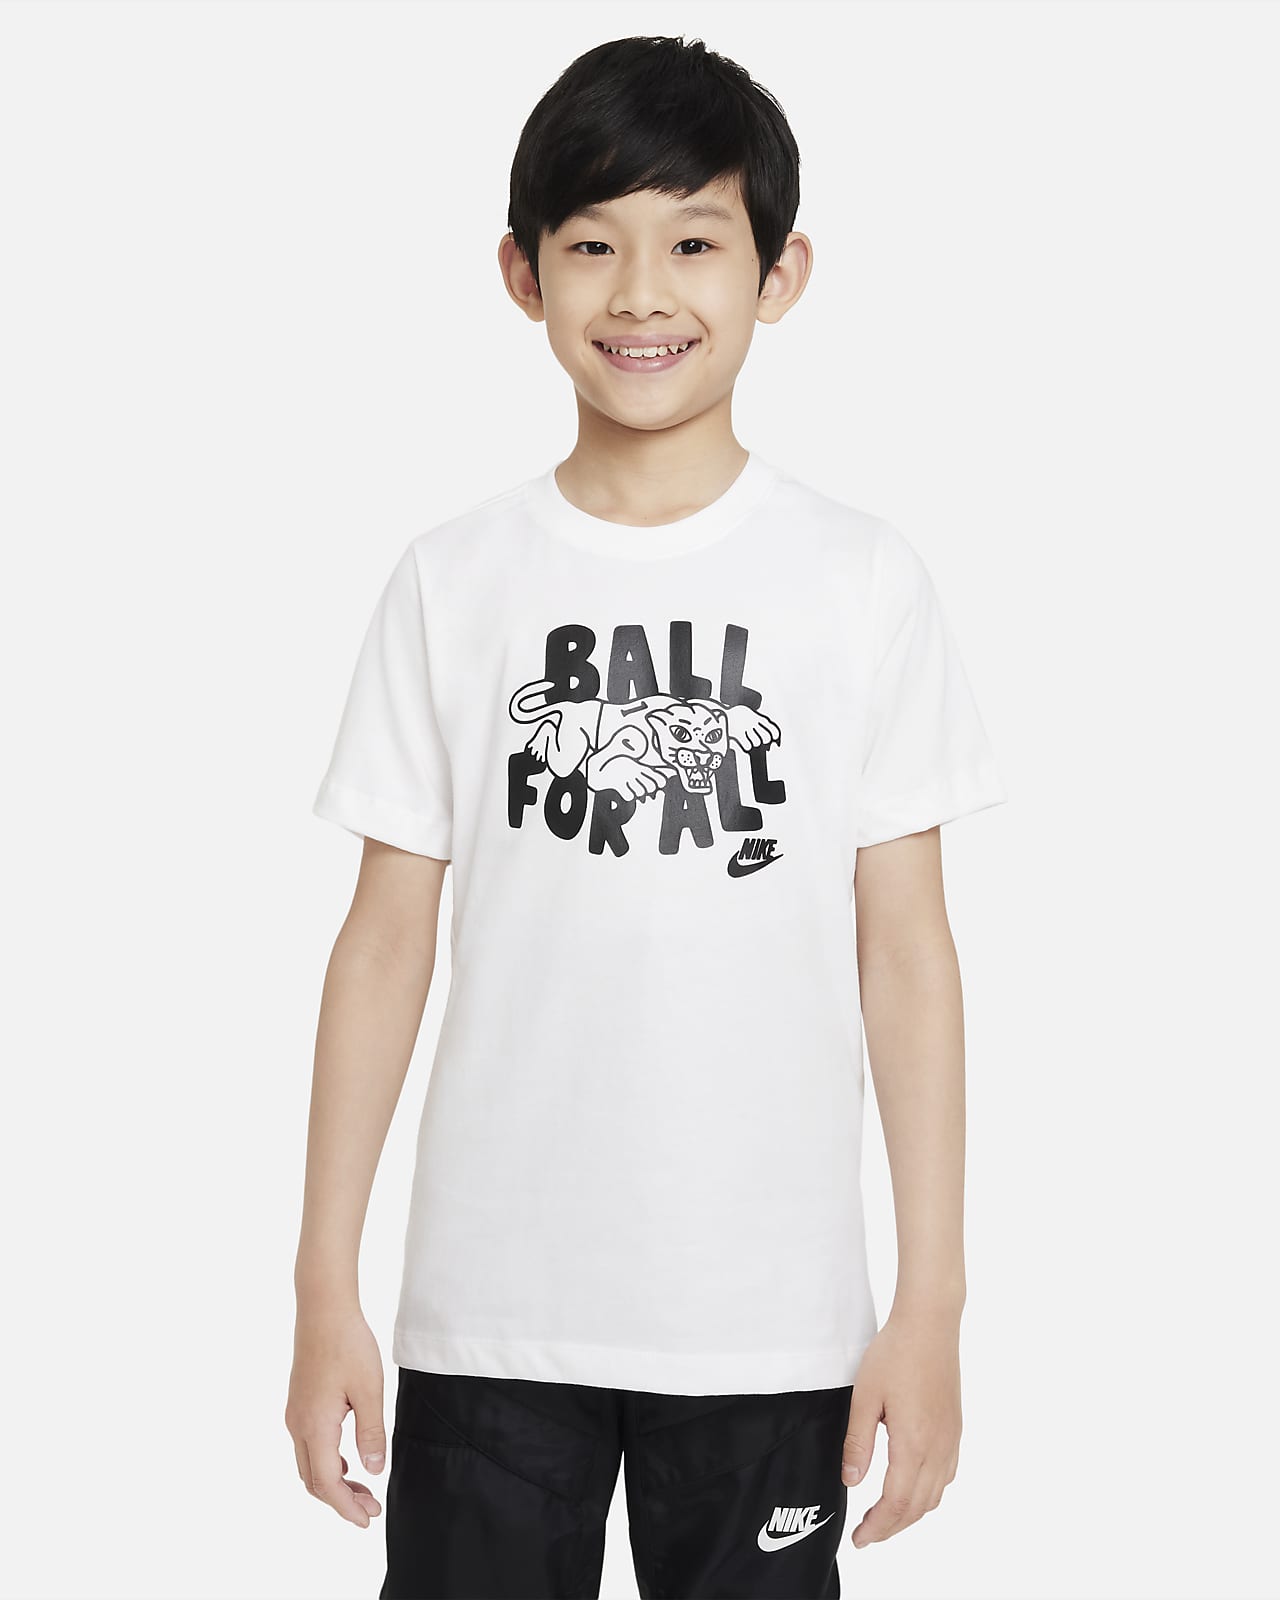 ナイキ スポーツウェア カルチャー オブ バスケットボール ジュニア (ボーイズ) Tシャツ